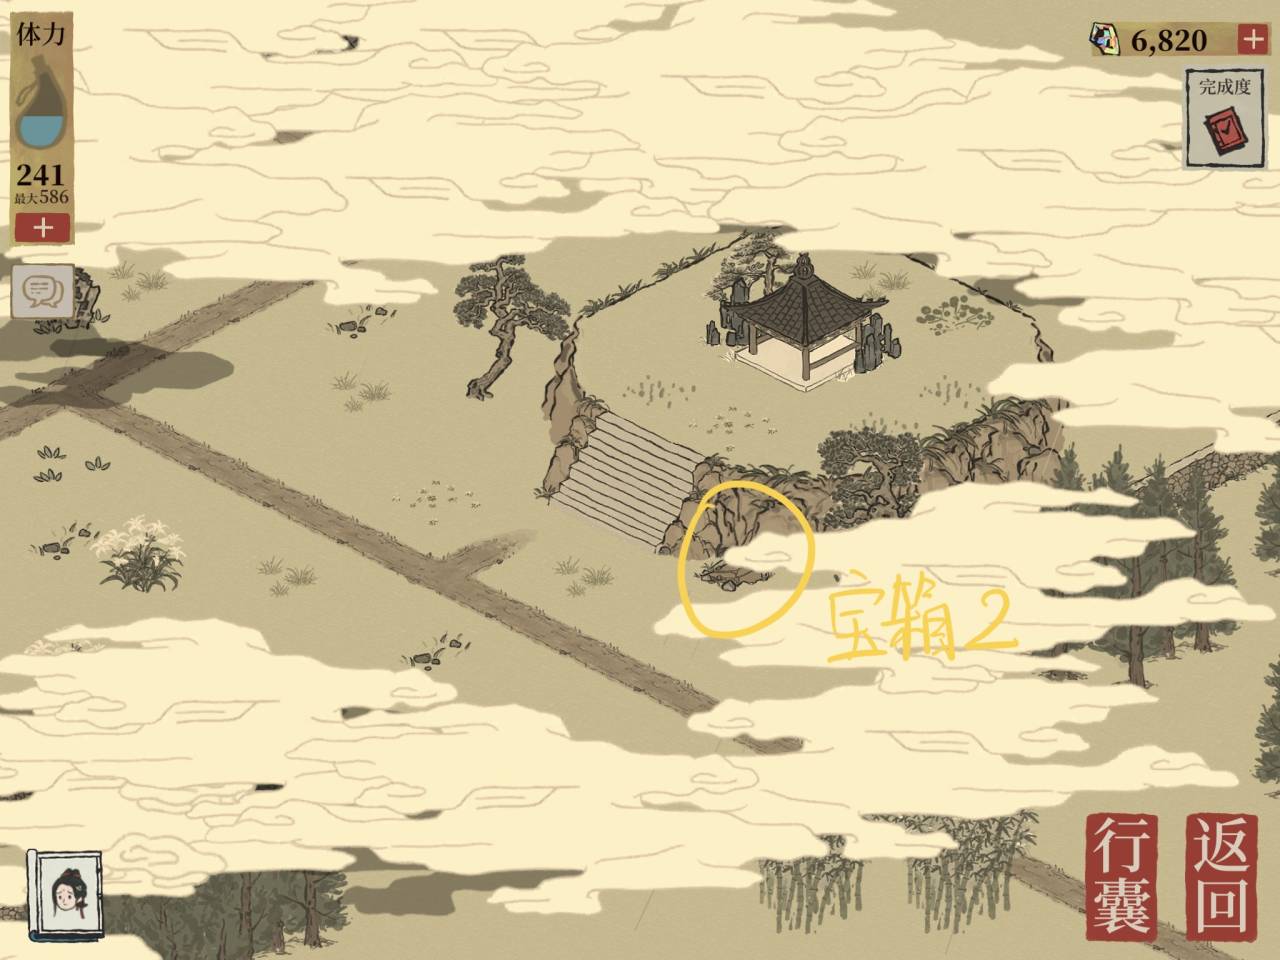 【详解】苏州探险【虎丘】章节|江南百景图 - 第13张